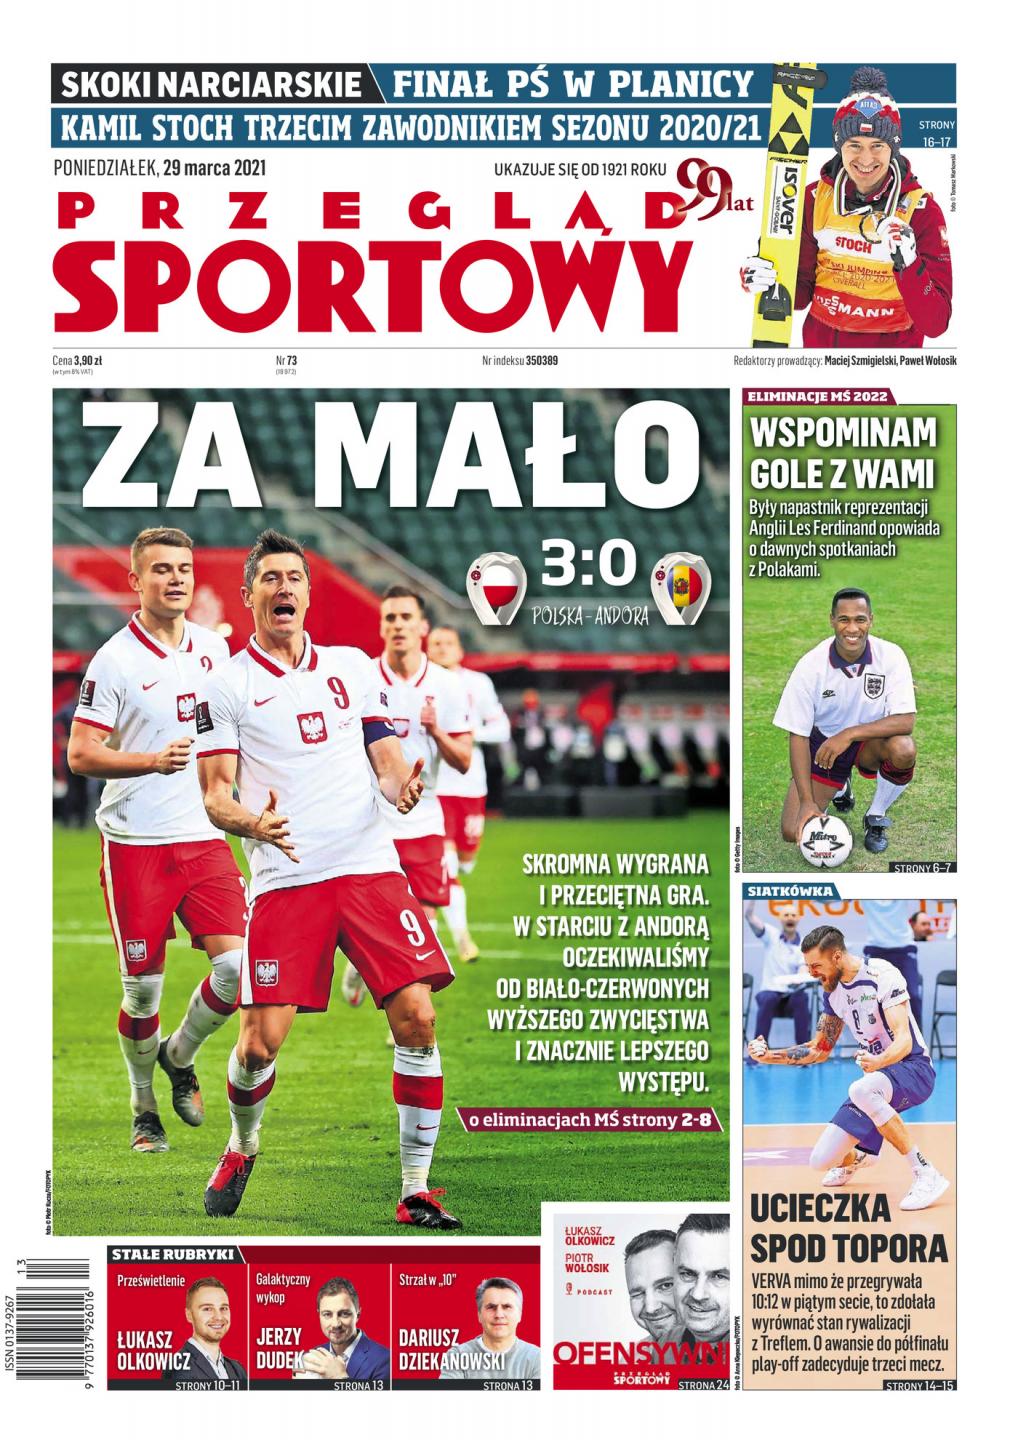 Polska - Andora 3:0 (28.03.2021) Przegląd Sportowy